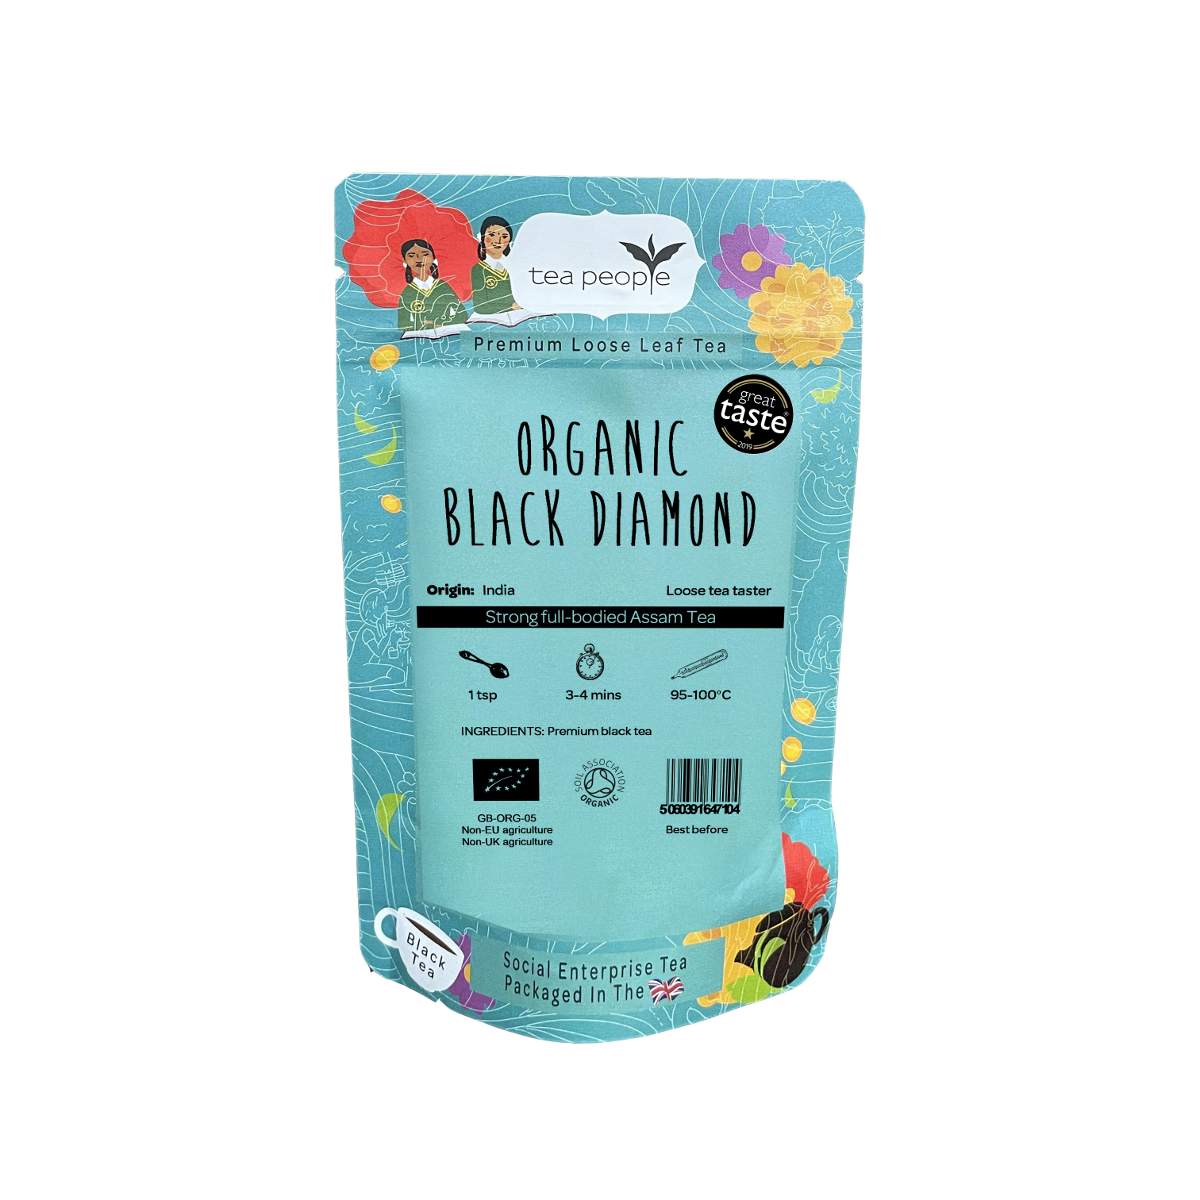 Organic Black Diamond - Loose Black Tea - Loose Tea Taster Pack